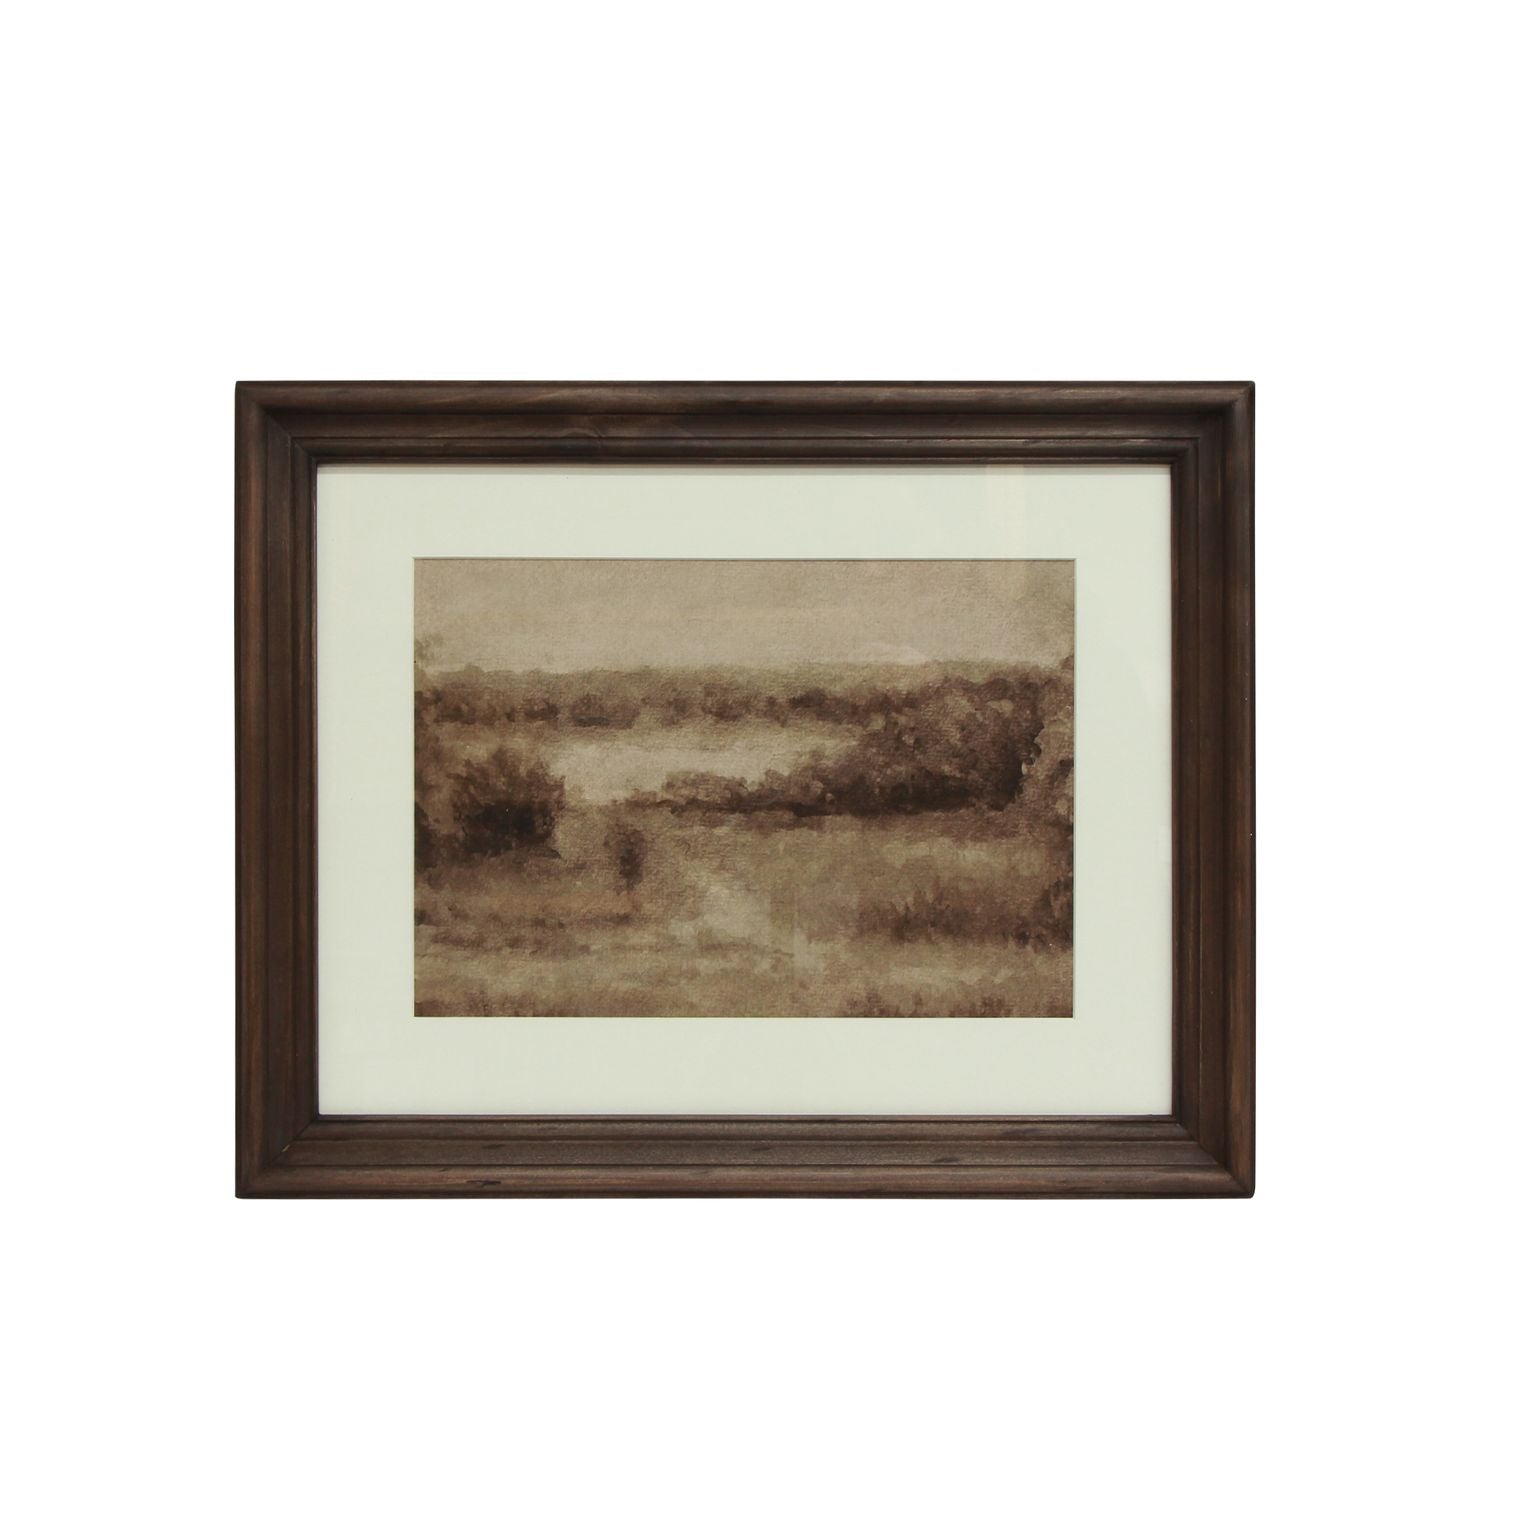 Pastural Field Landscape Framed Print